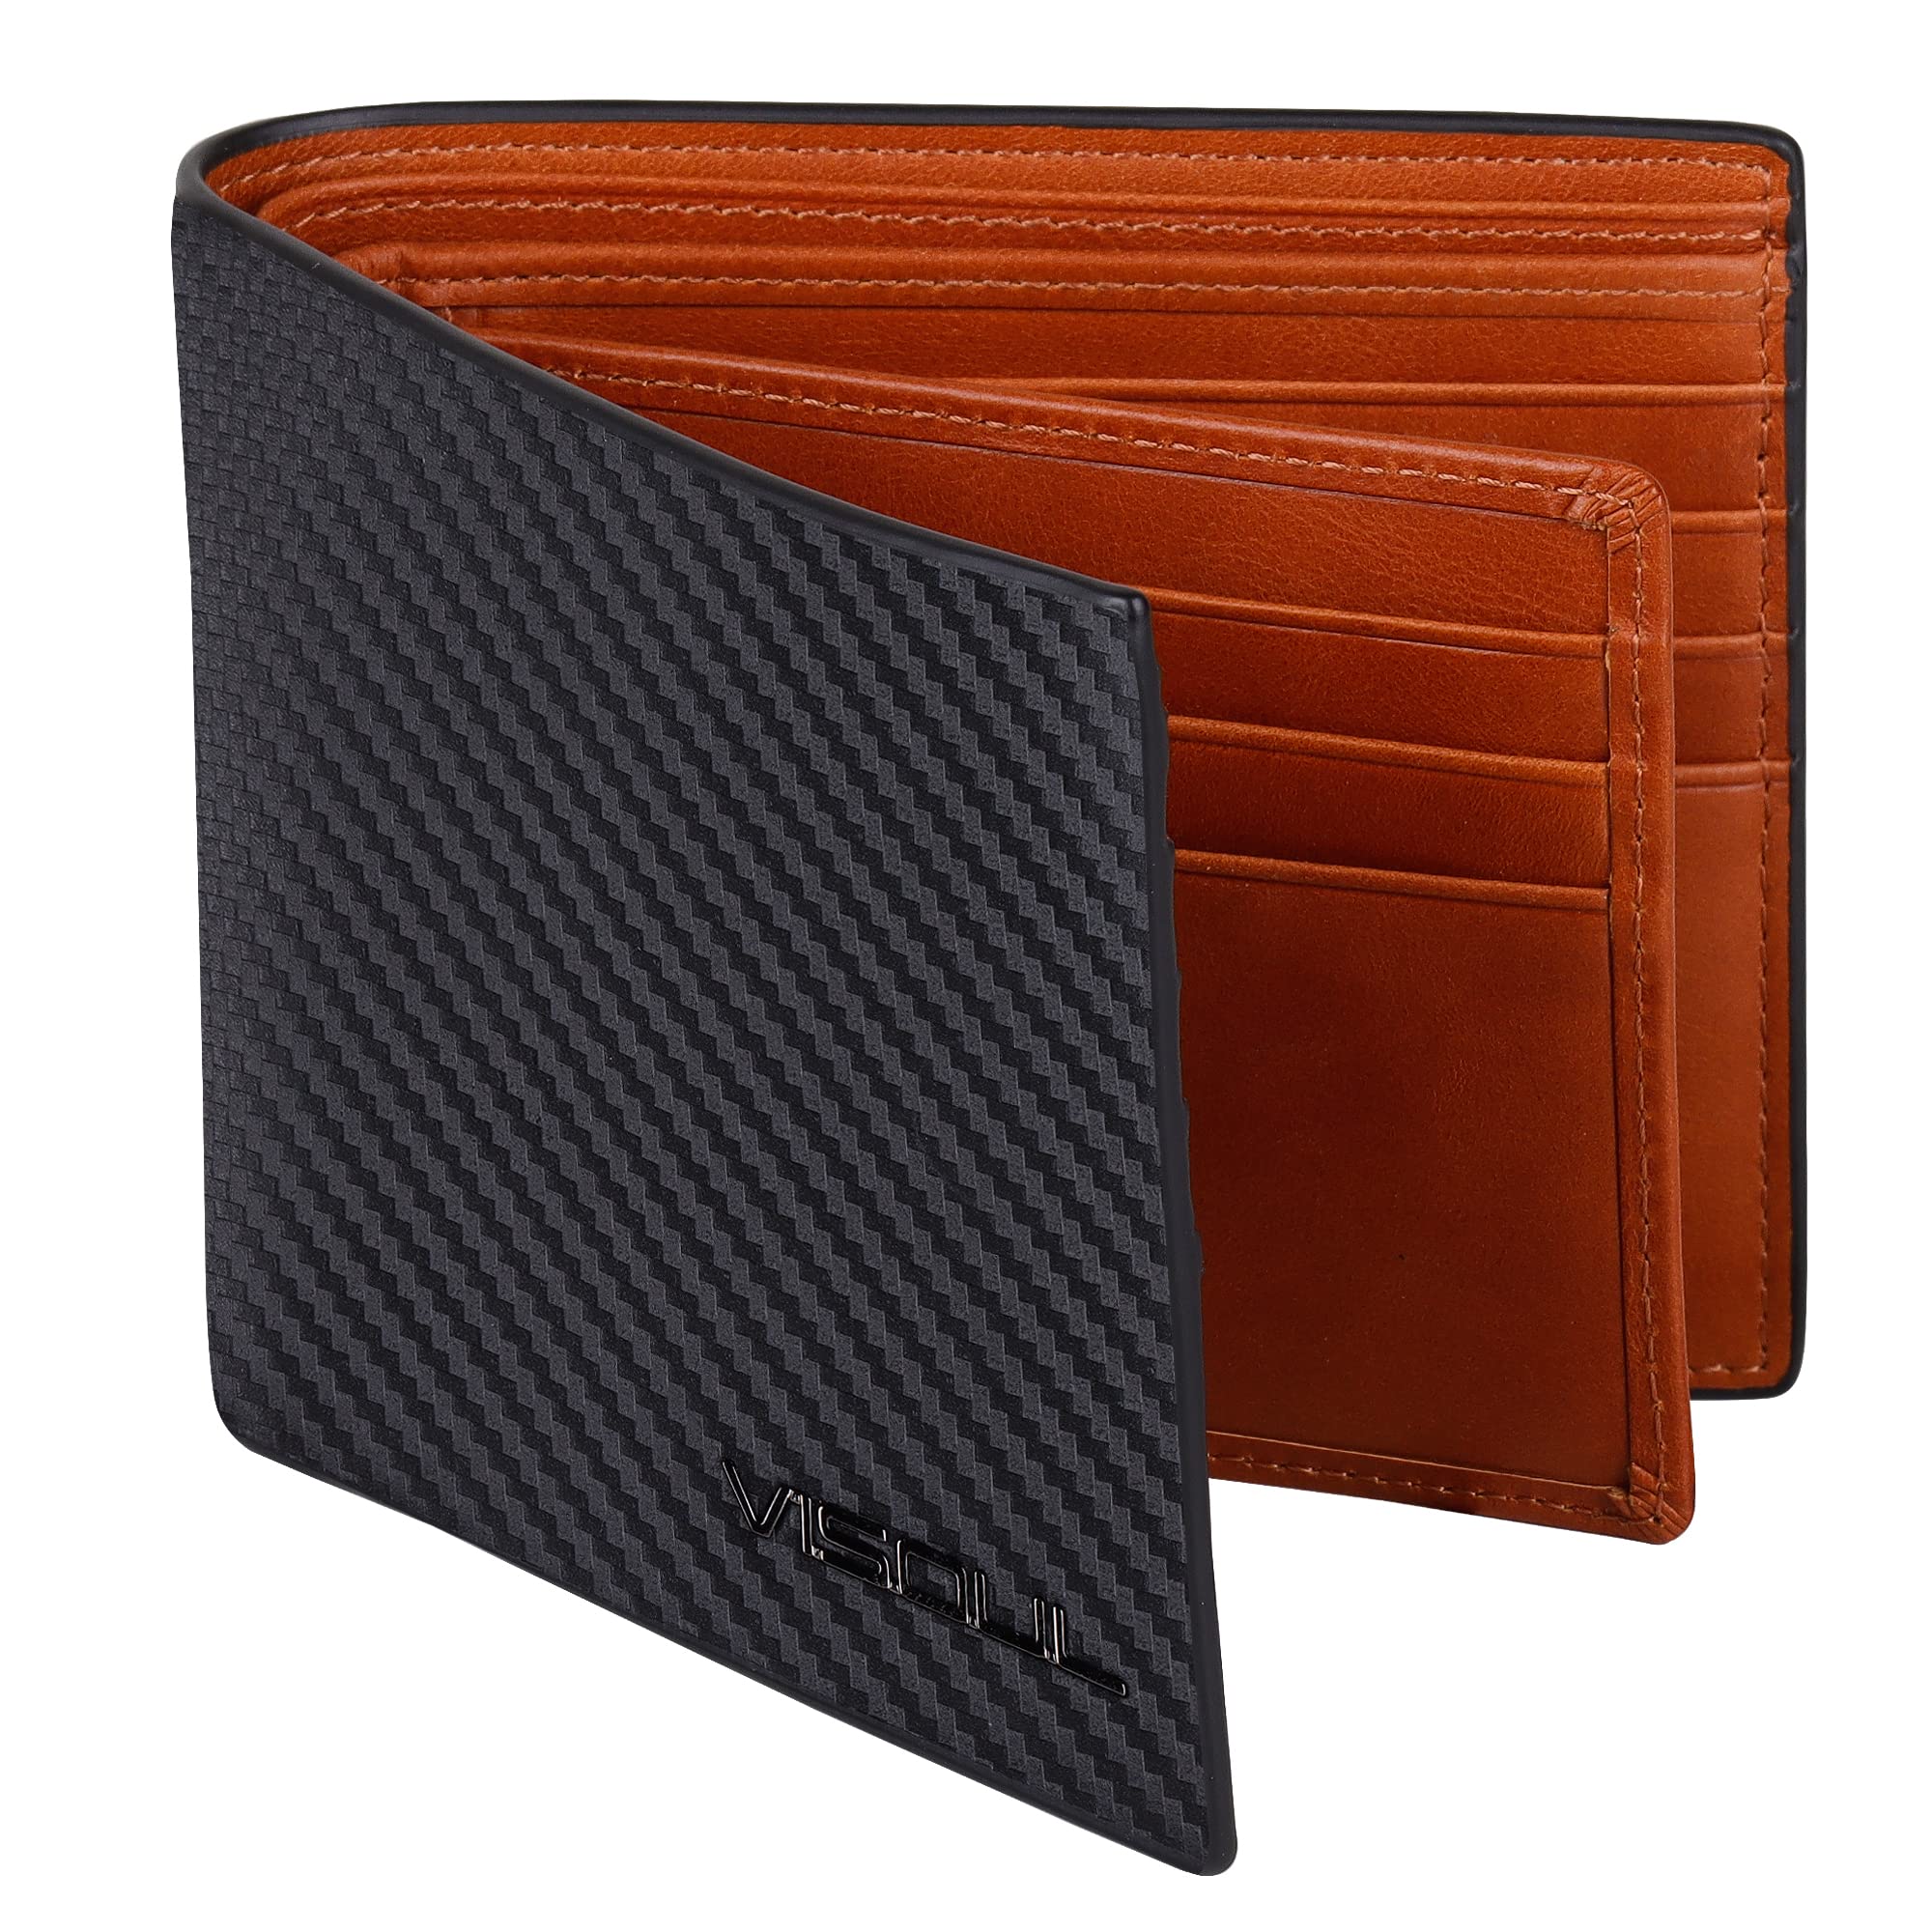 VISOUL Herren-Geldbörse aus echtem Leder, RFID-Blockierung, klassische dünne Geldbörse aus echtem Leder mit Geldscheinfach, Kartenschlitzen und Ausweisfenster, Carbon + 10 Braun